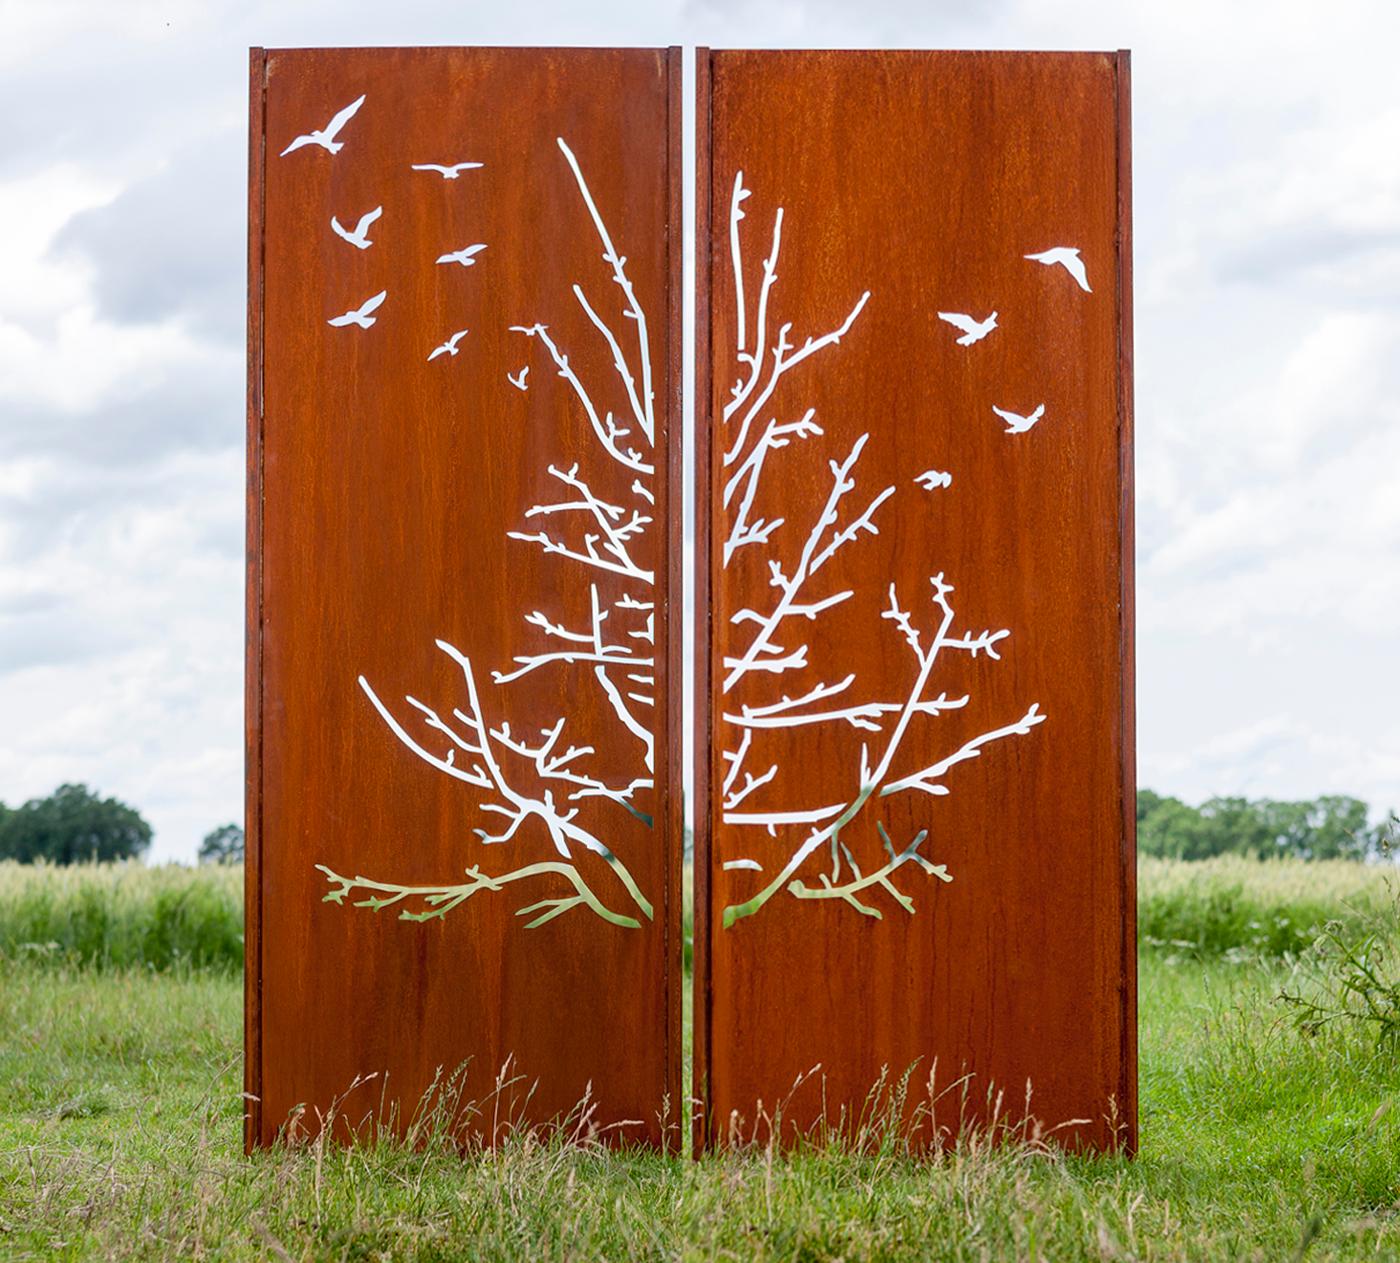 Mur de jardin en acier - "Diptyque d'oiseaux" - ornement d'extérieur moderne - 150×195 cm - Sculpture de Stefan Traloc